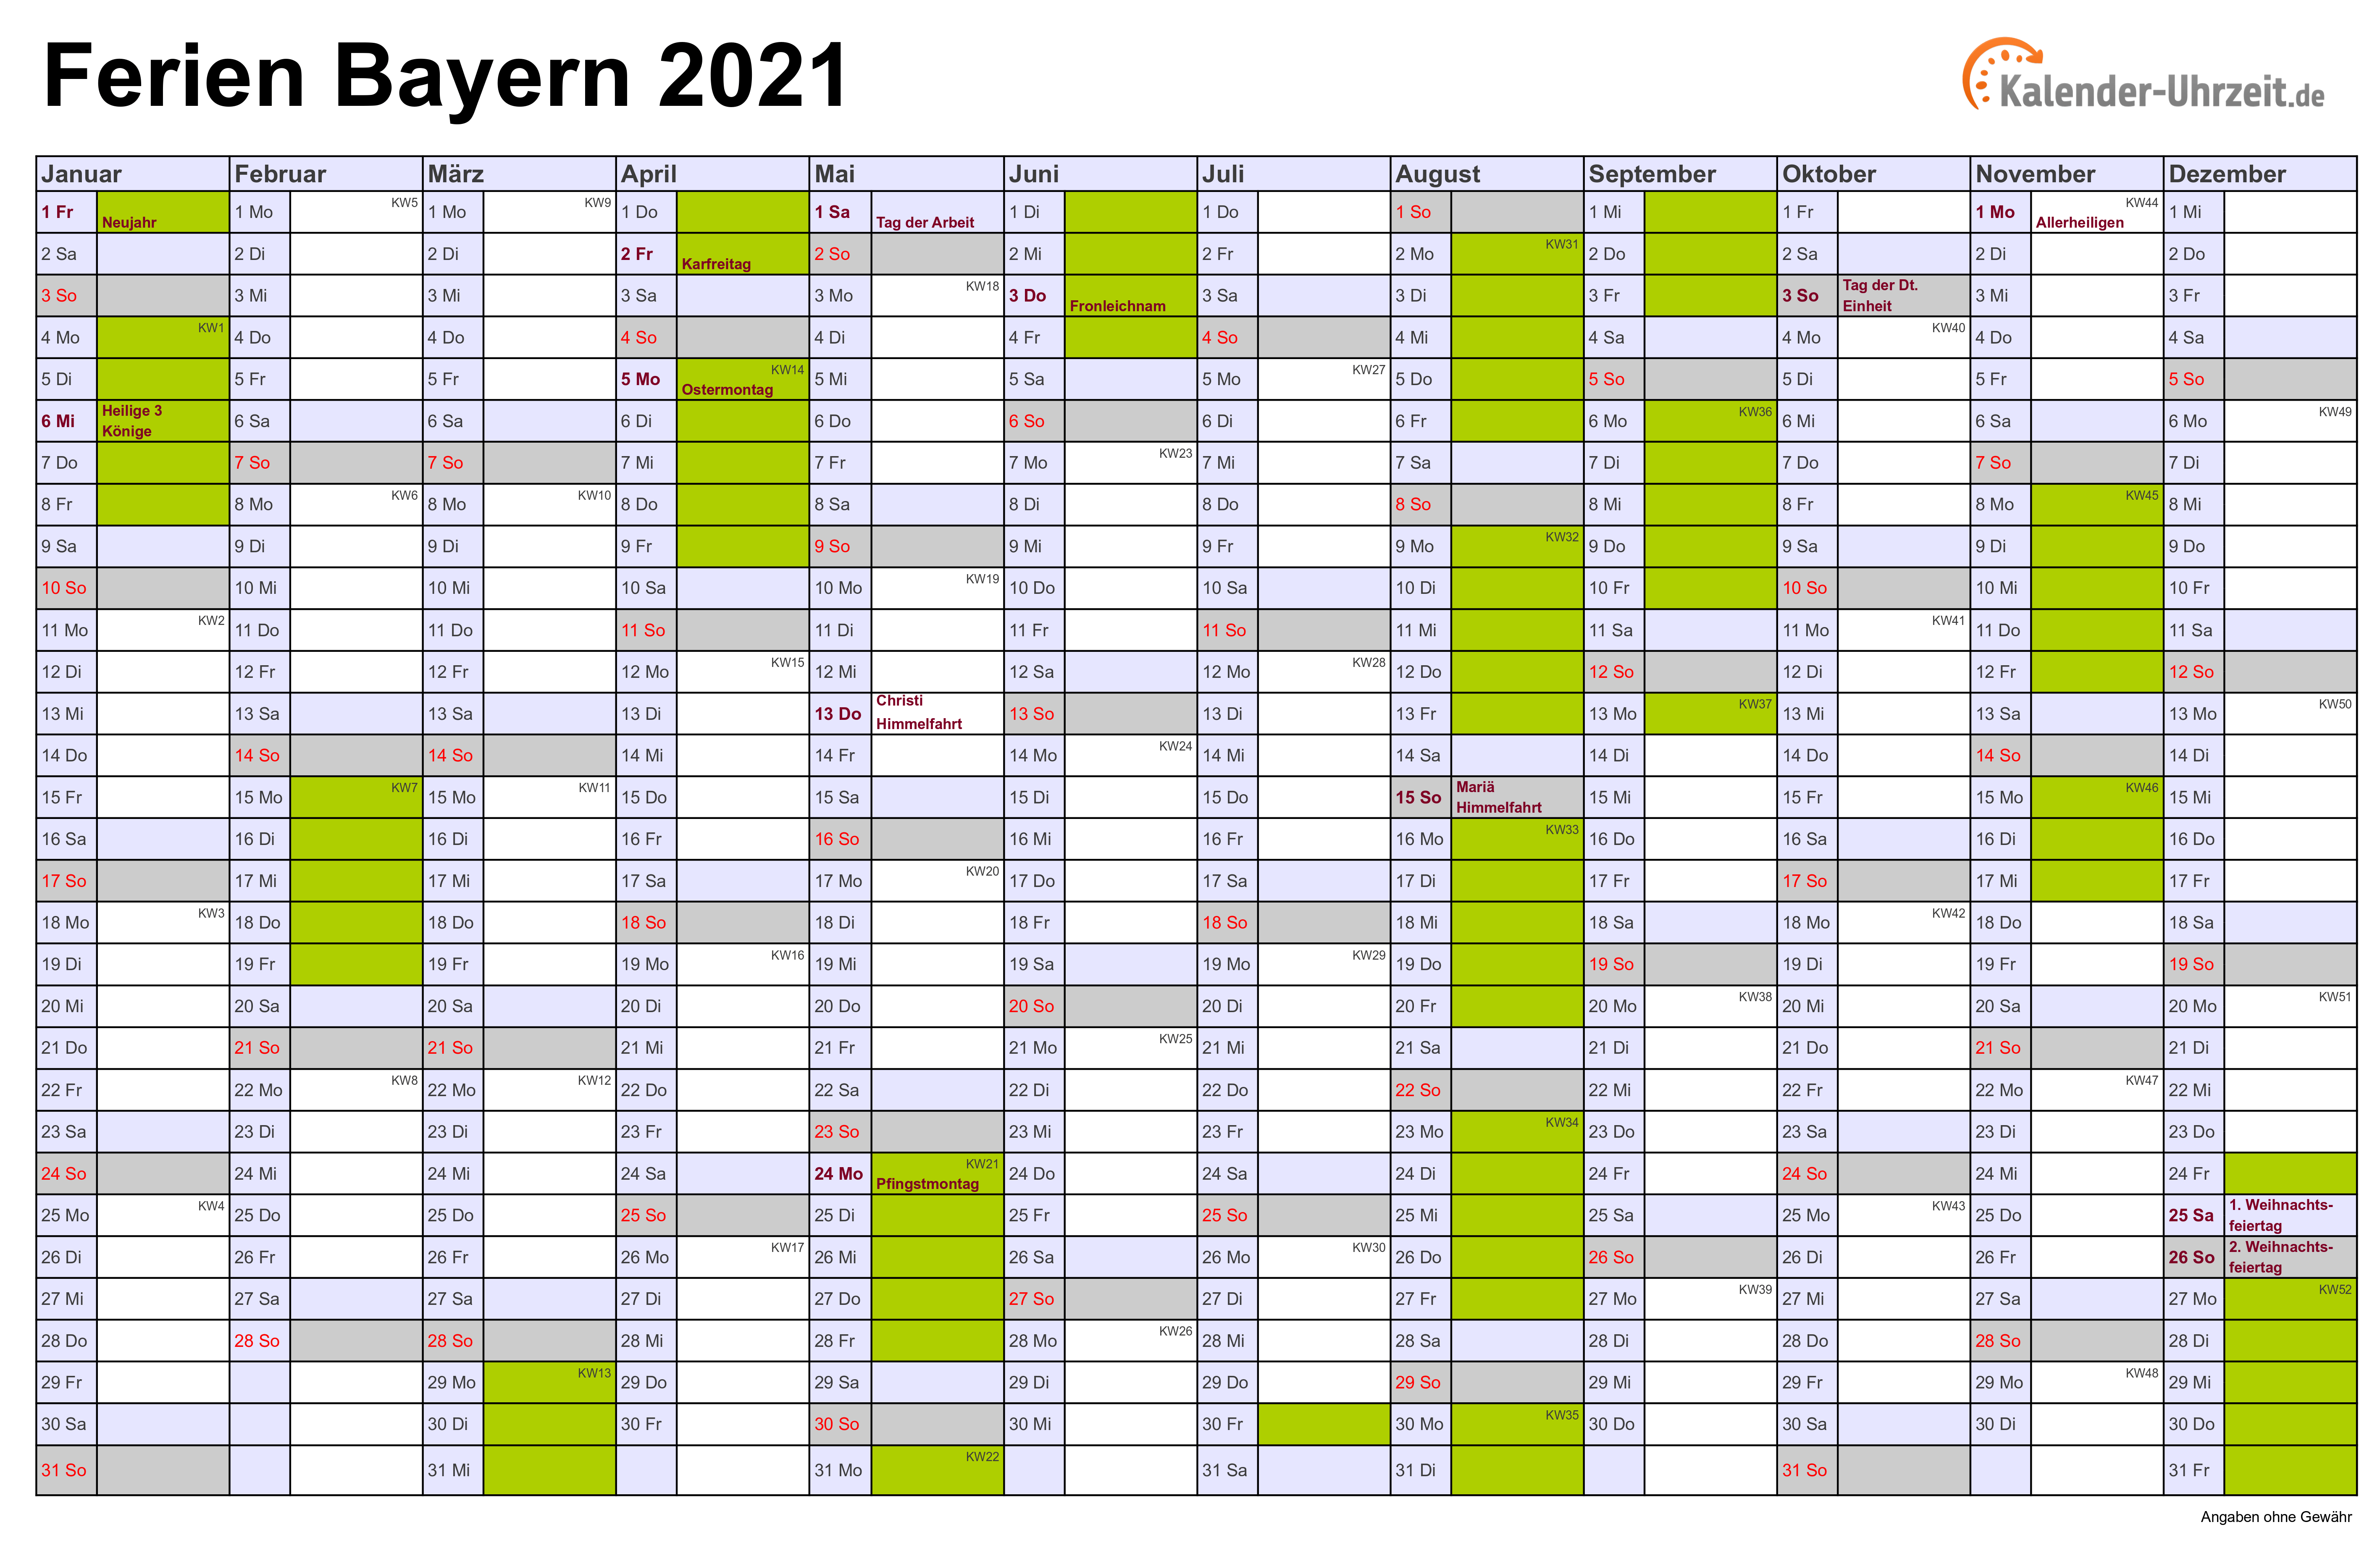 Ferien Bayern 2021 Ferienkalender Zum Ausdrucken दोस्तों आज की इस video में सीखेगे की कैसे हम excel में calendar को बना सकते है एक smart way में. kalender uhrzeit de